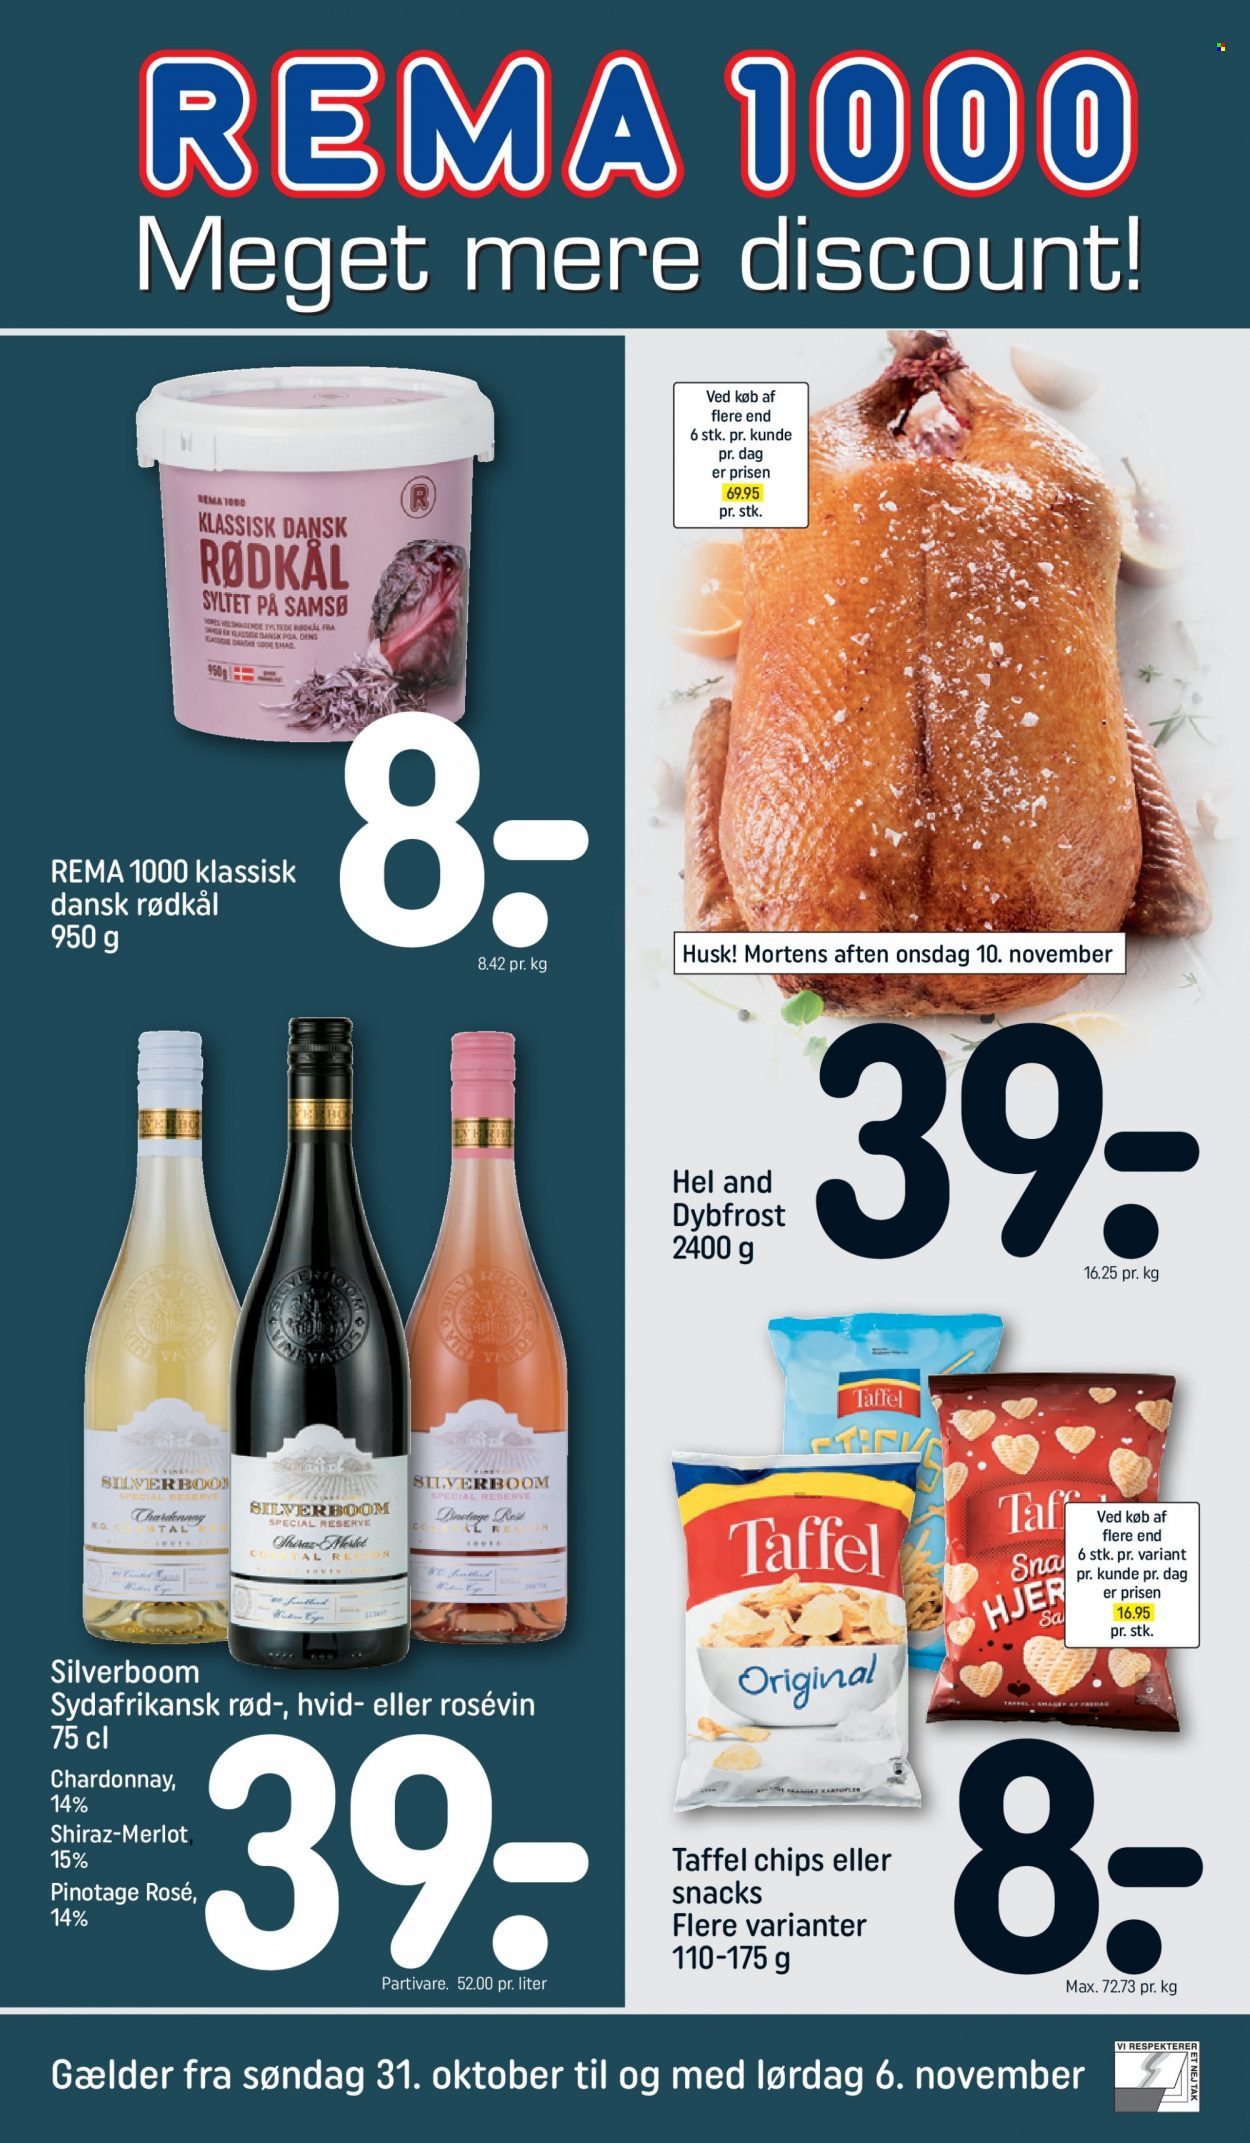 thumbnail - Rema 1000 tilbud  - 31.10.2021 - 6.11.2021 - tilbudsprodukter - rødkål, hel and, chips, Chardonnay, Merlot, vin, Shiraz. Side 1.